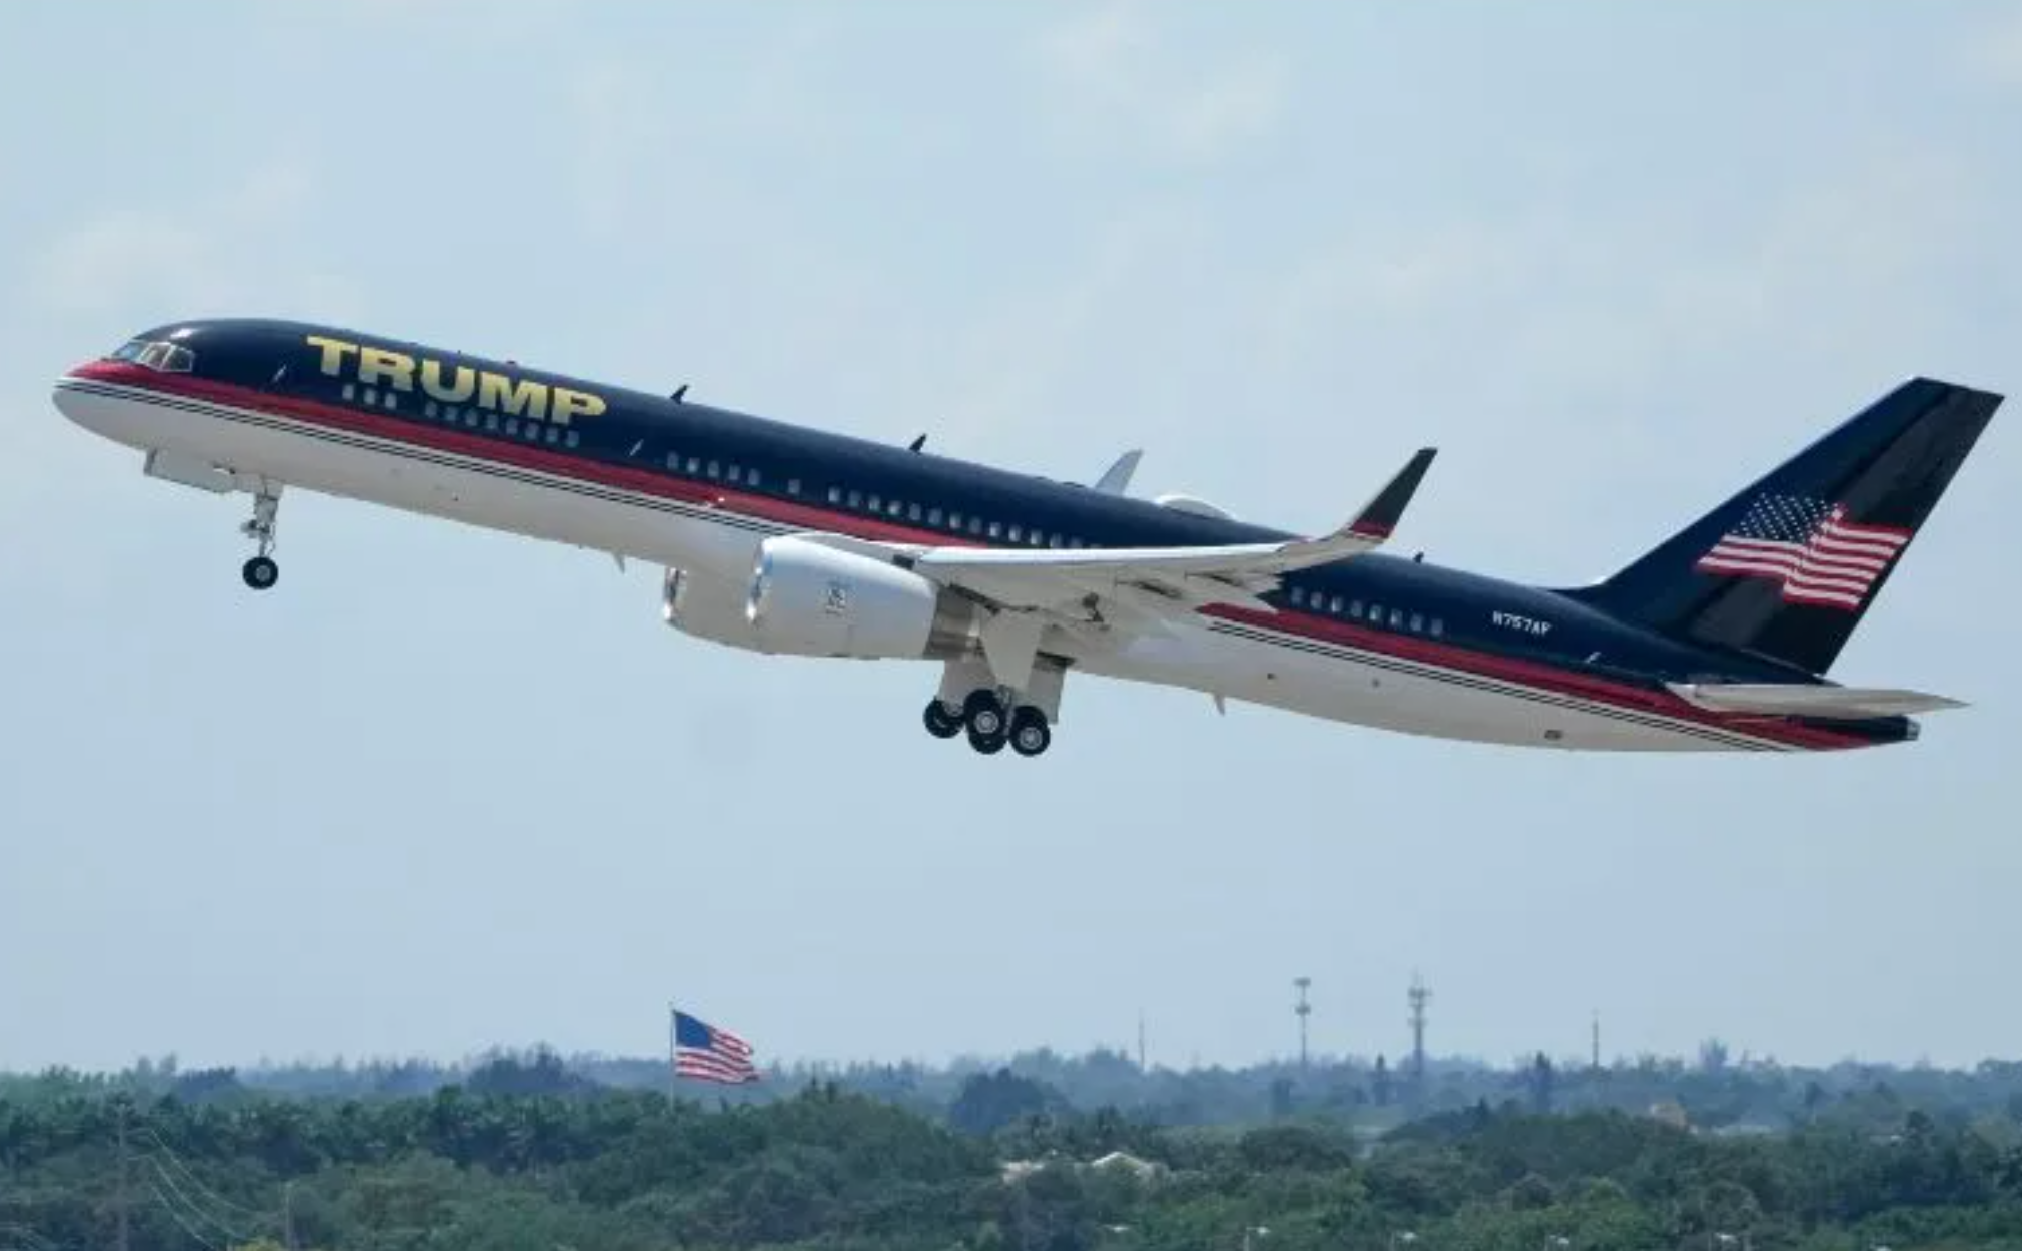 ¡Se fue! Trump aborda su avión para regresar a Florida.